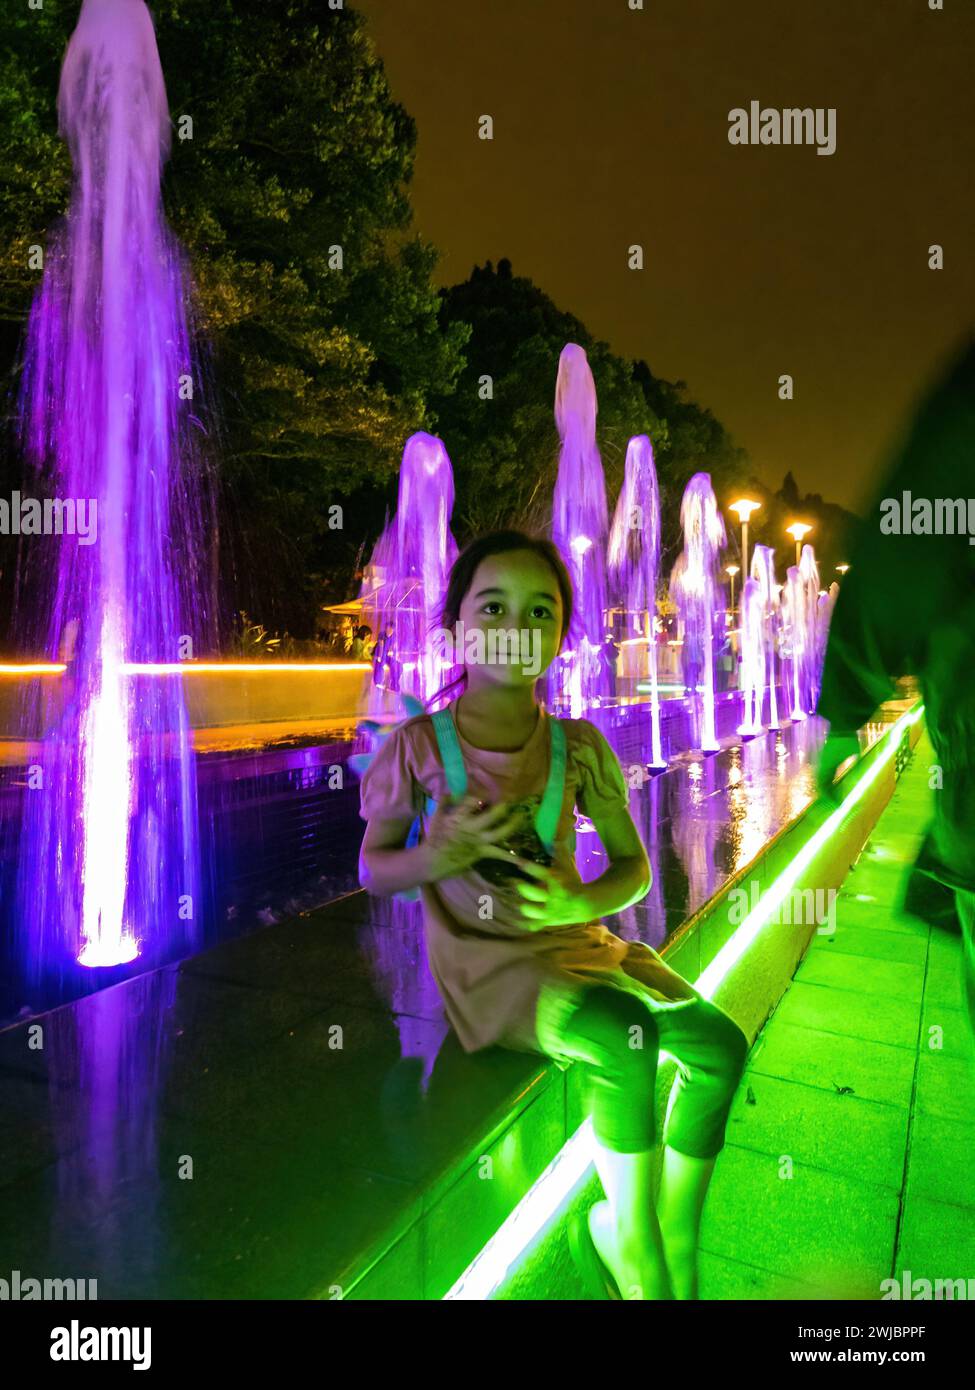 Un jeune enfant est assis près de l'eau éclairée par LED de nuit. Banque D'Images